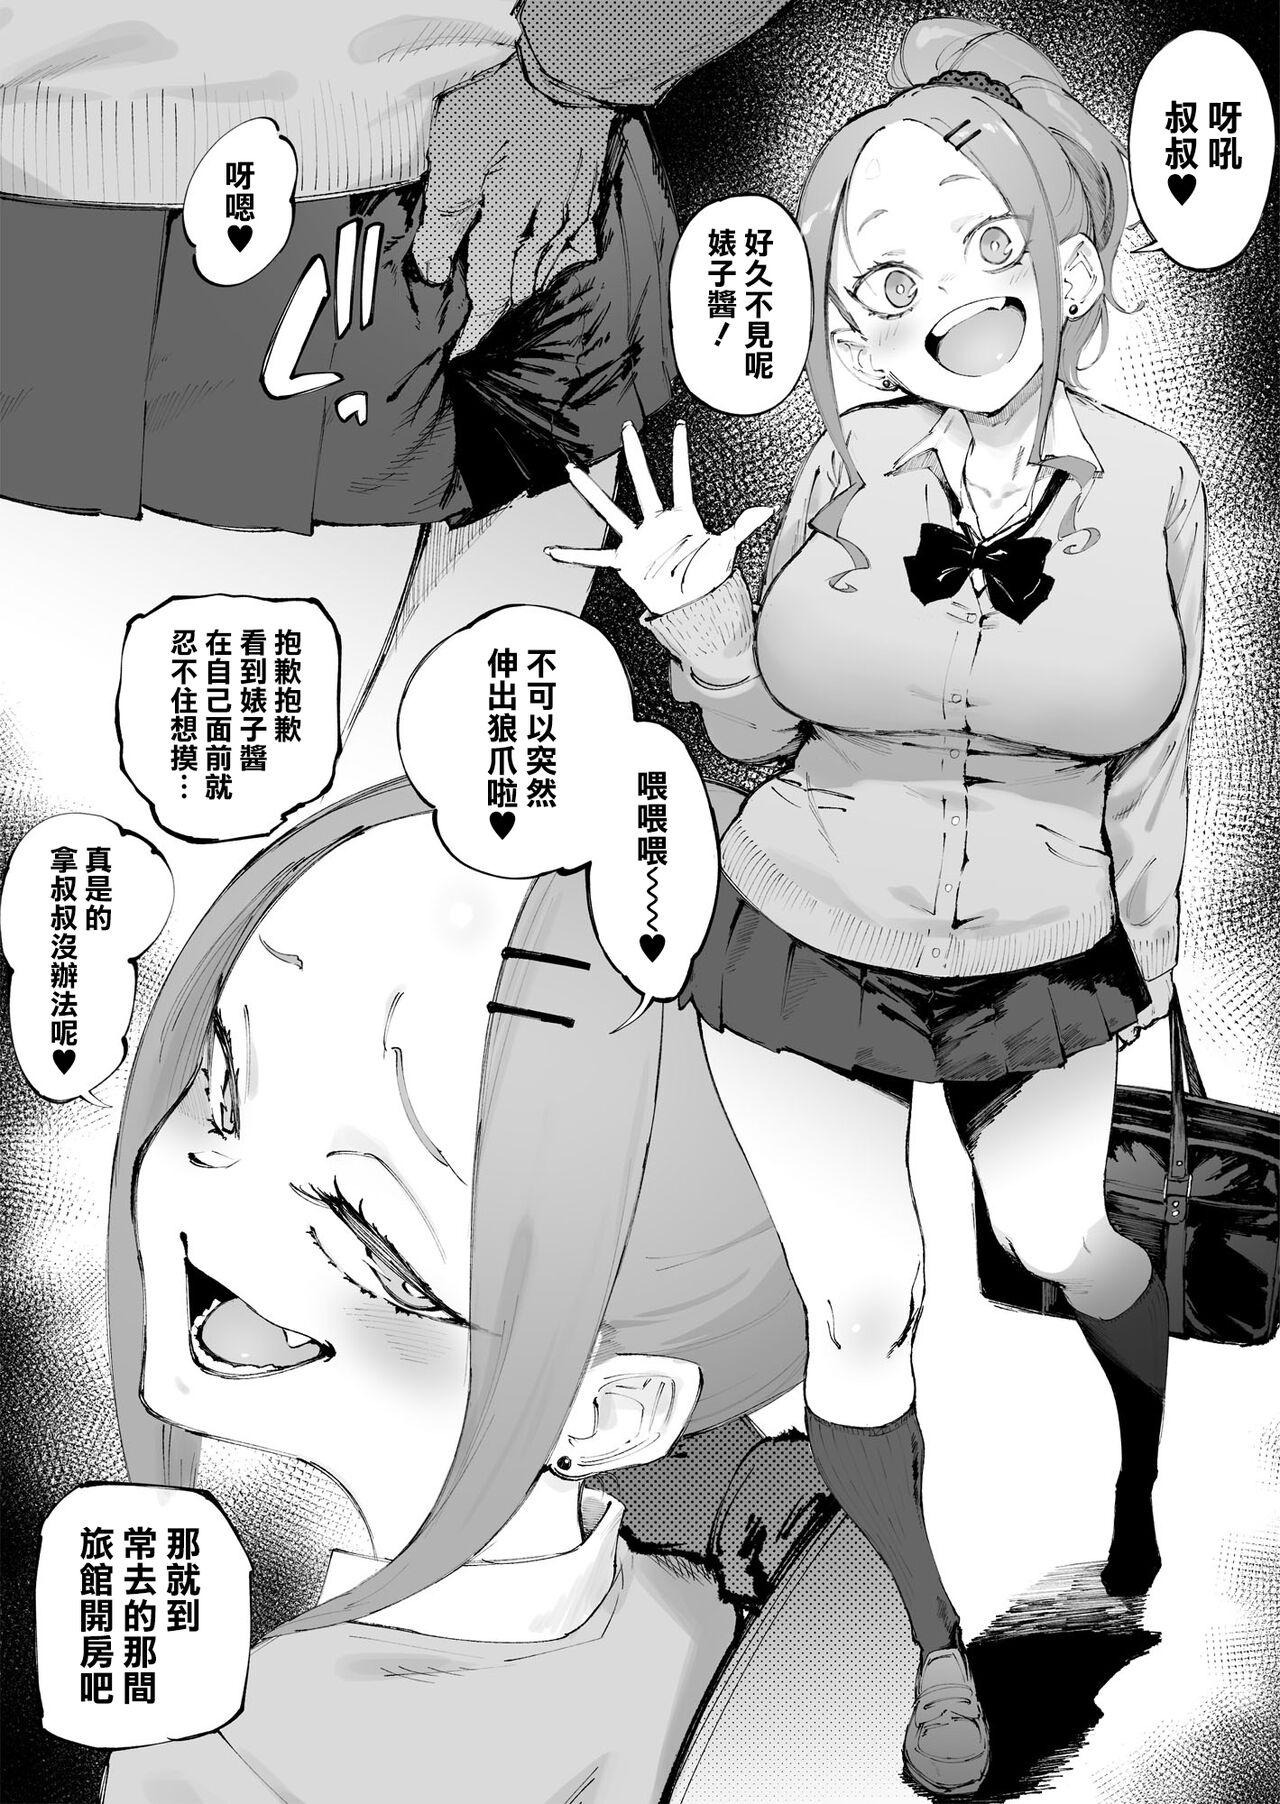 Funny Uchi no Ko Manga Sono | 辣妹短篇合集 Bikini - Page 6